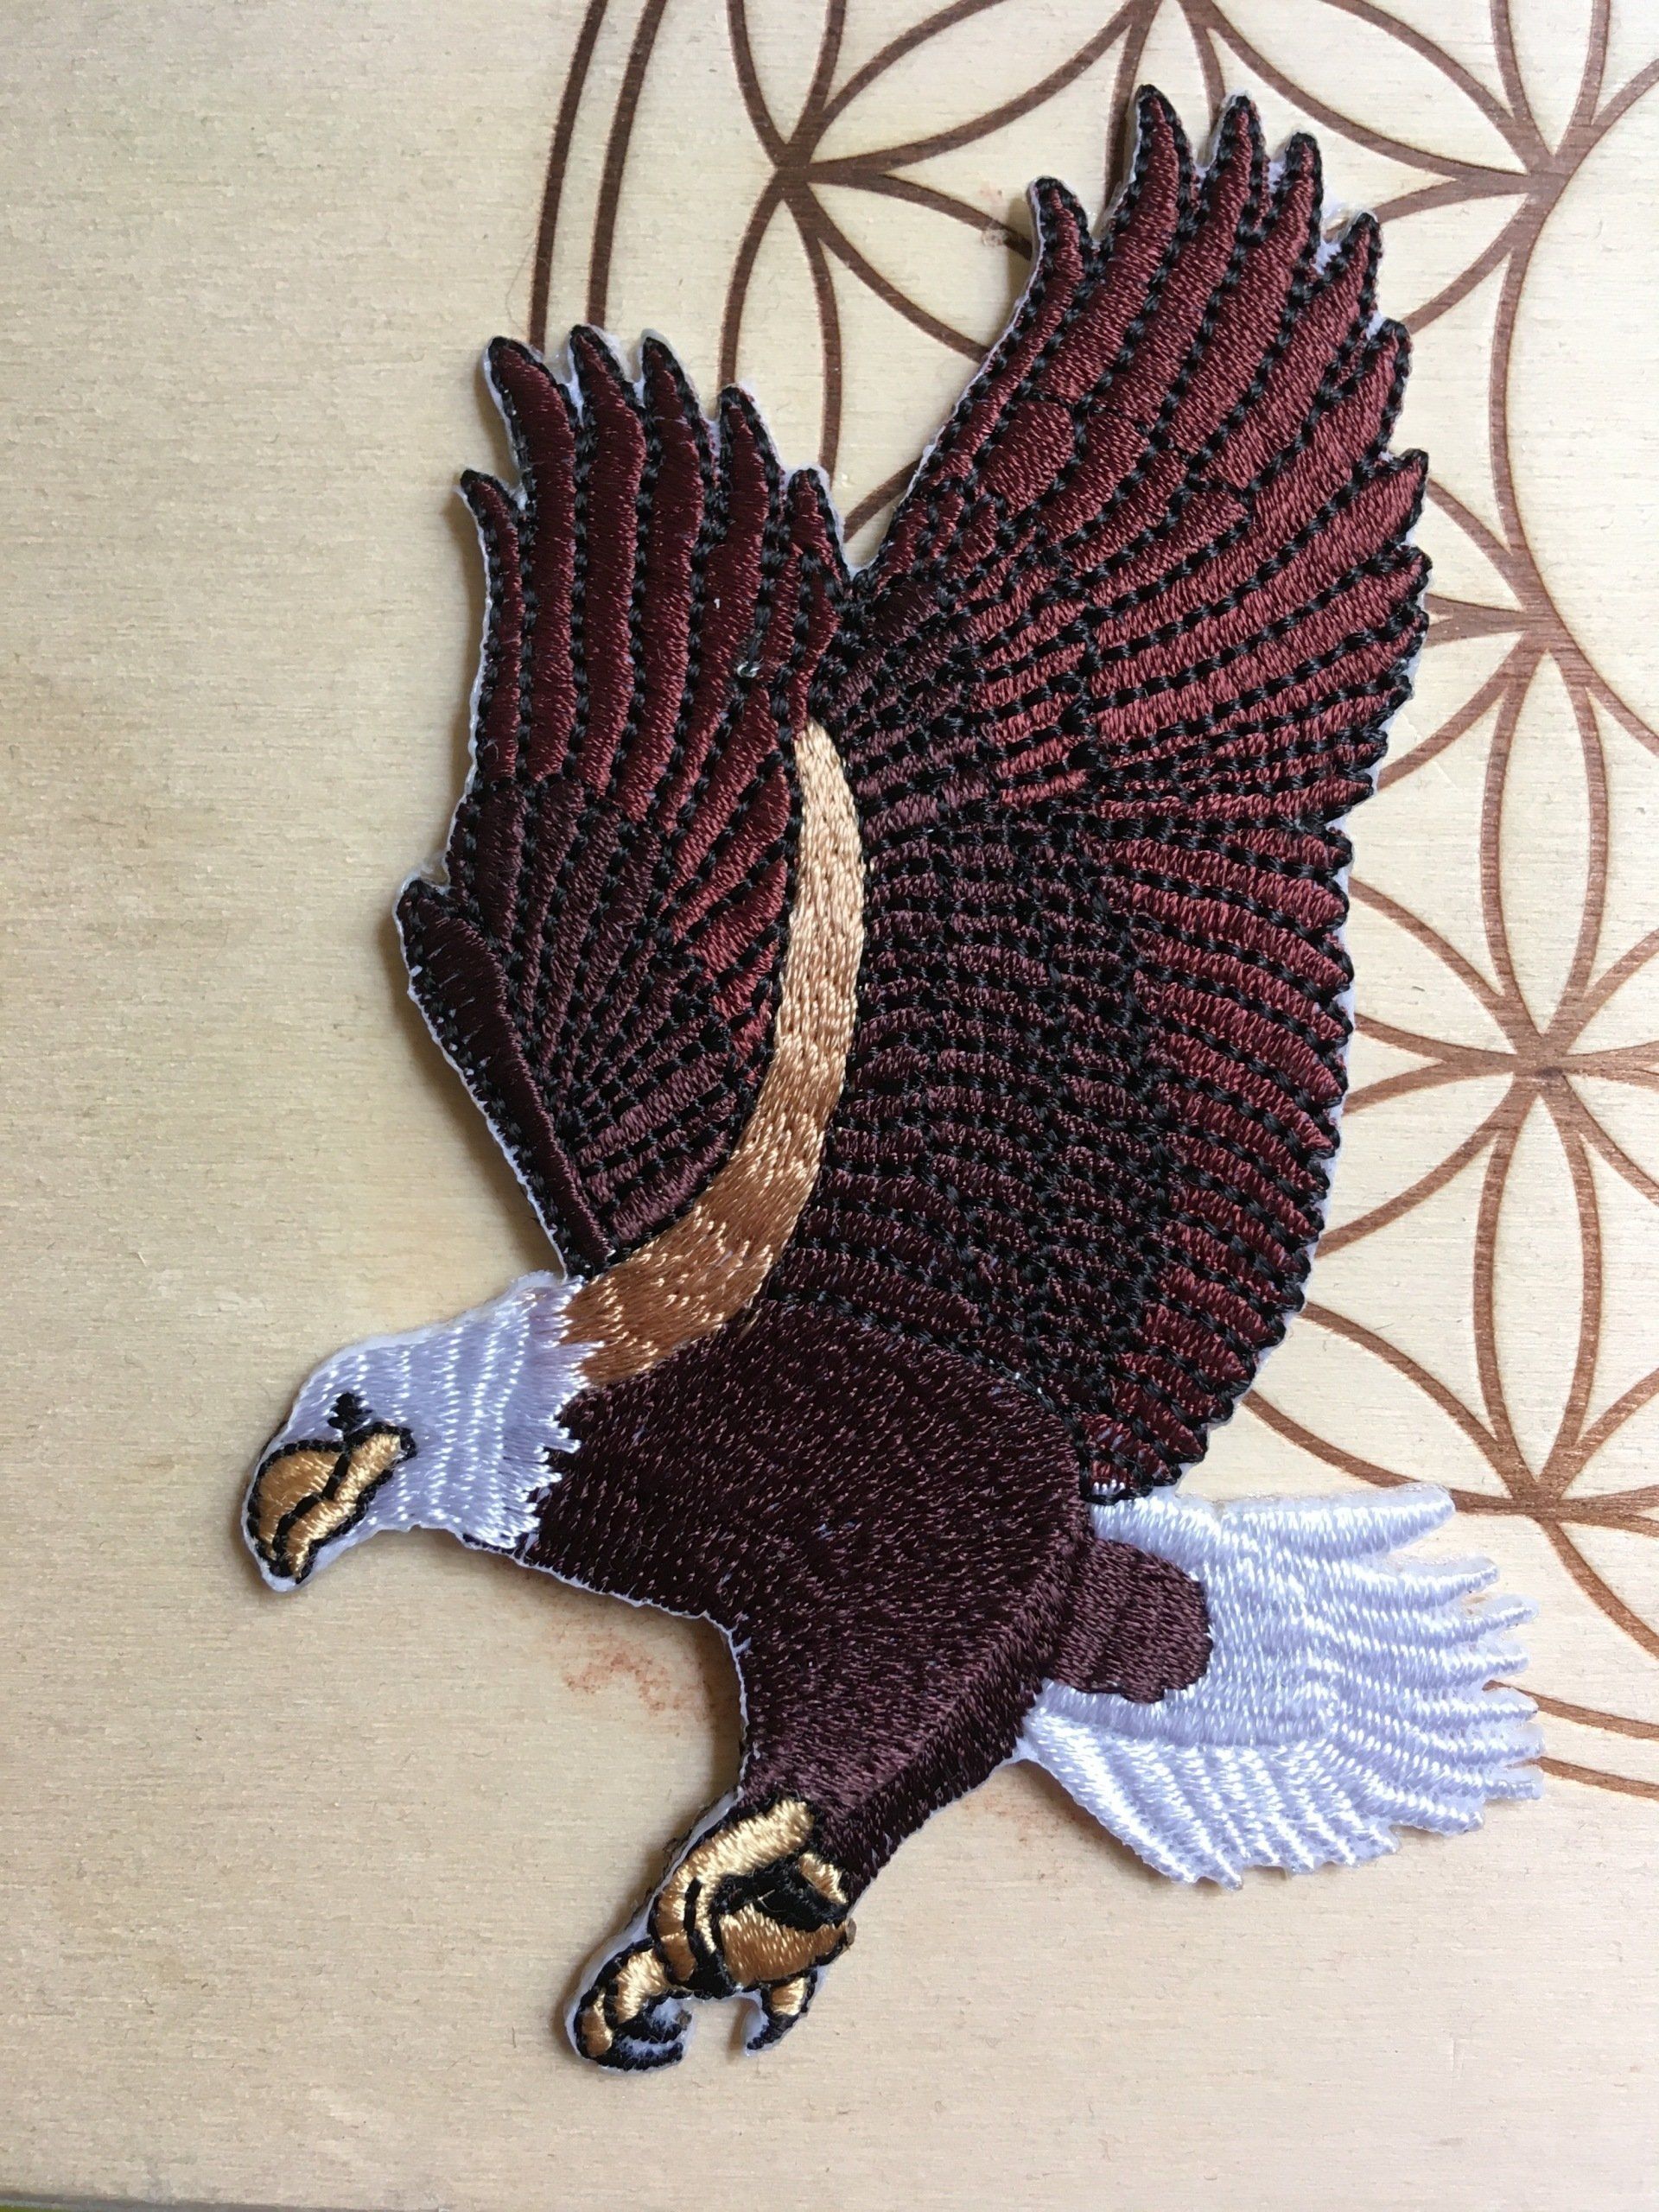 Krafttier Adler